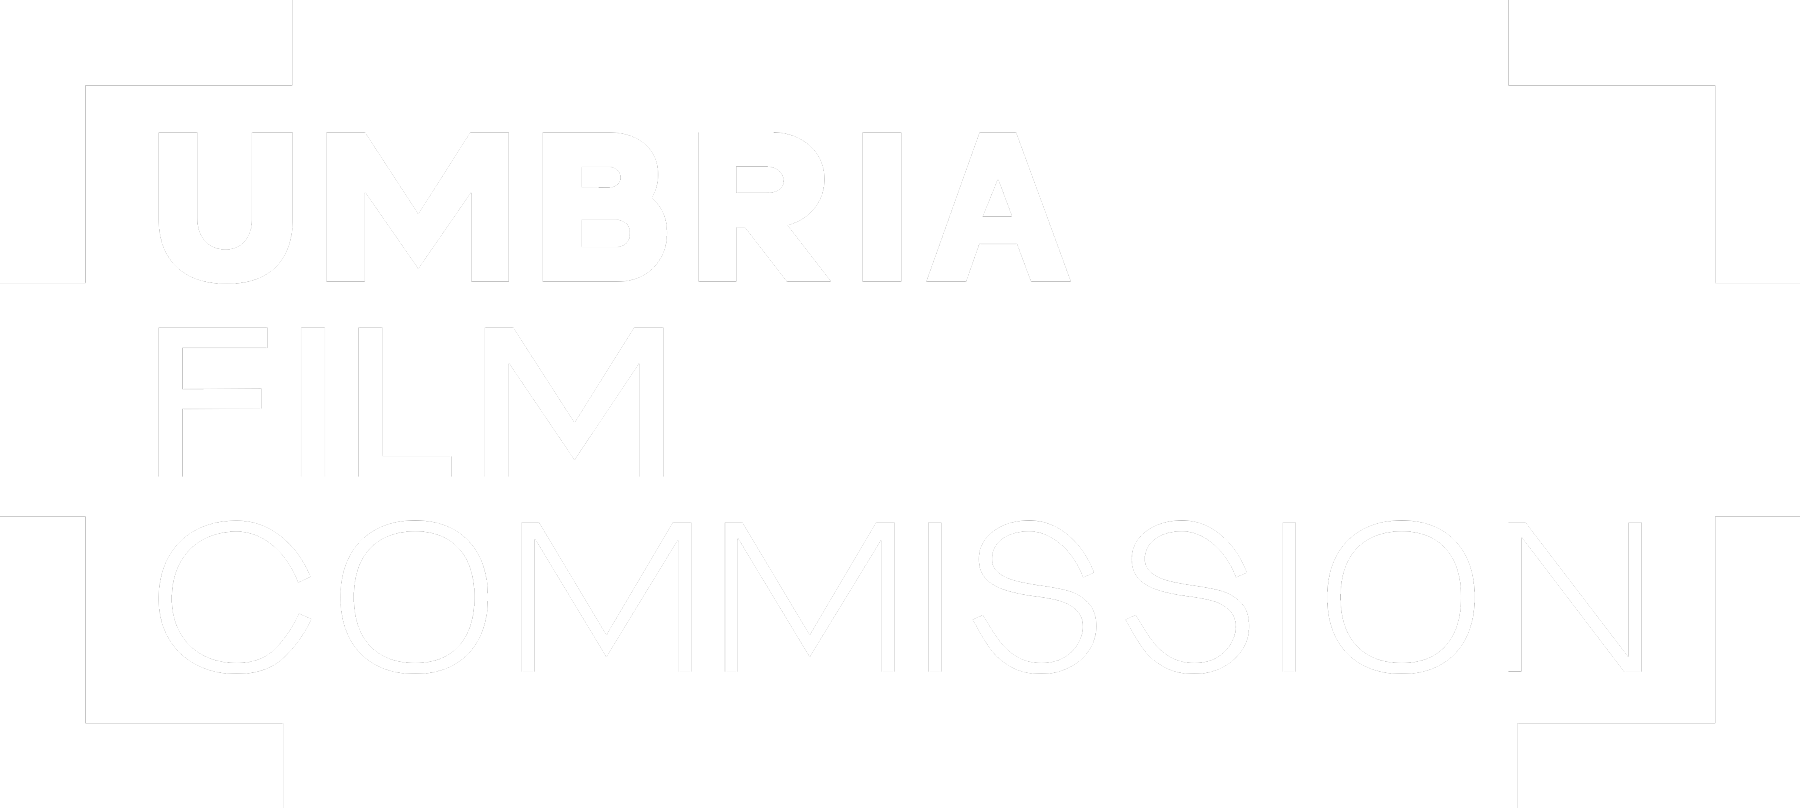 UFC - Umbria Film Commission